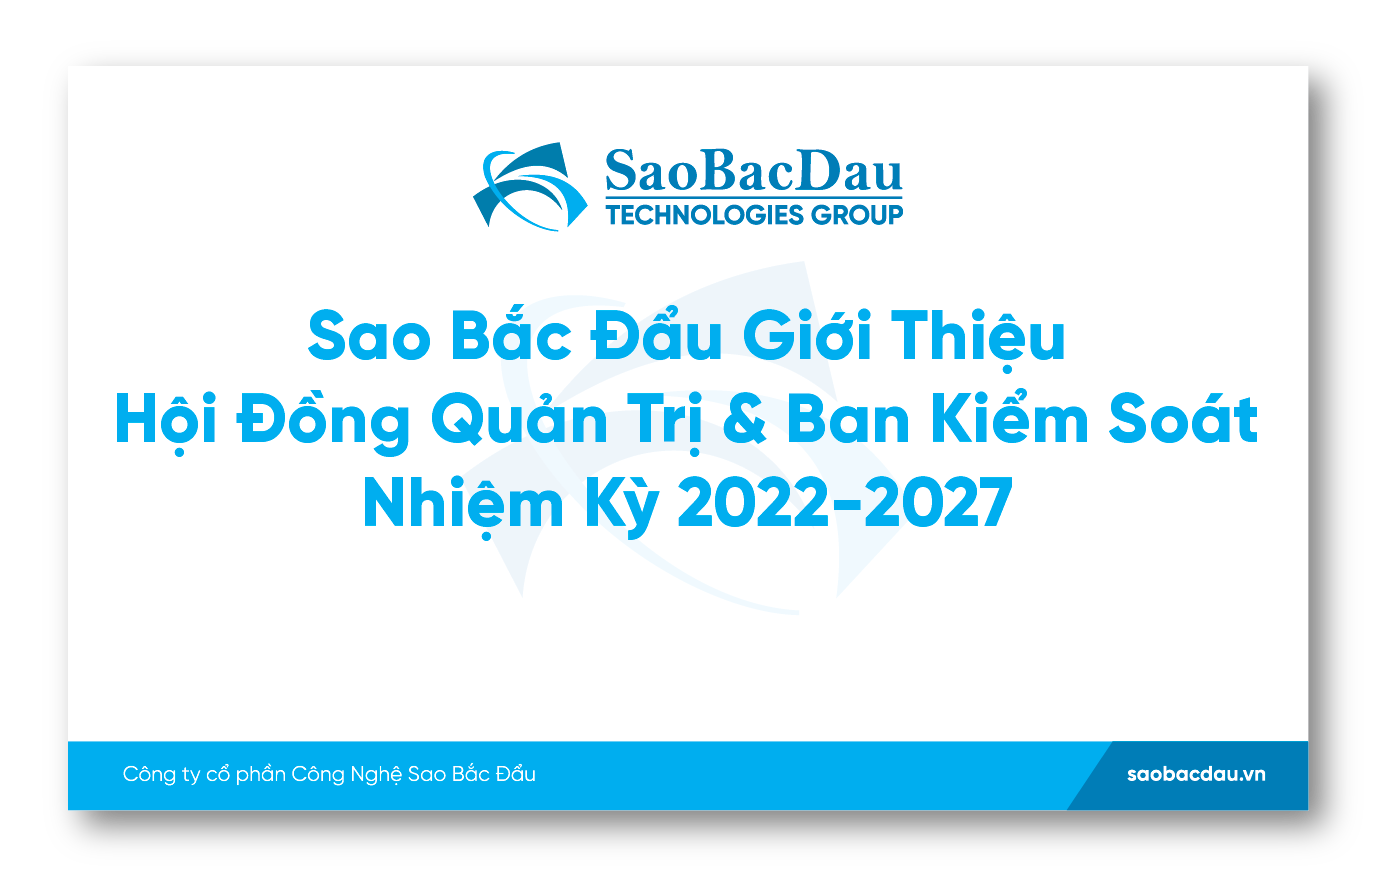 Sao Bắc Đẩu Giới Thiệu HĐQT & BKS Nhiệm Kỳ 2022-2027